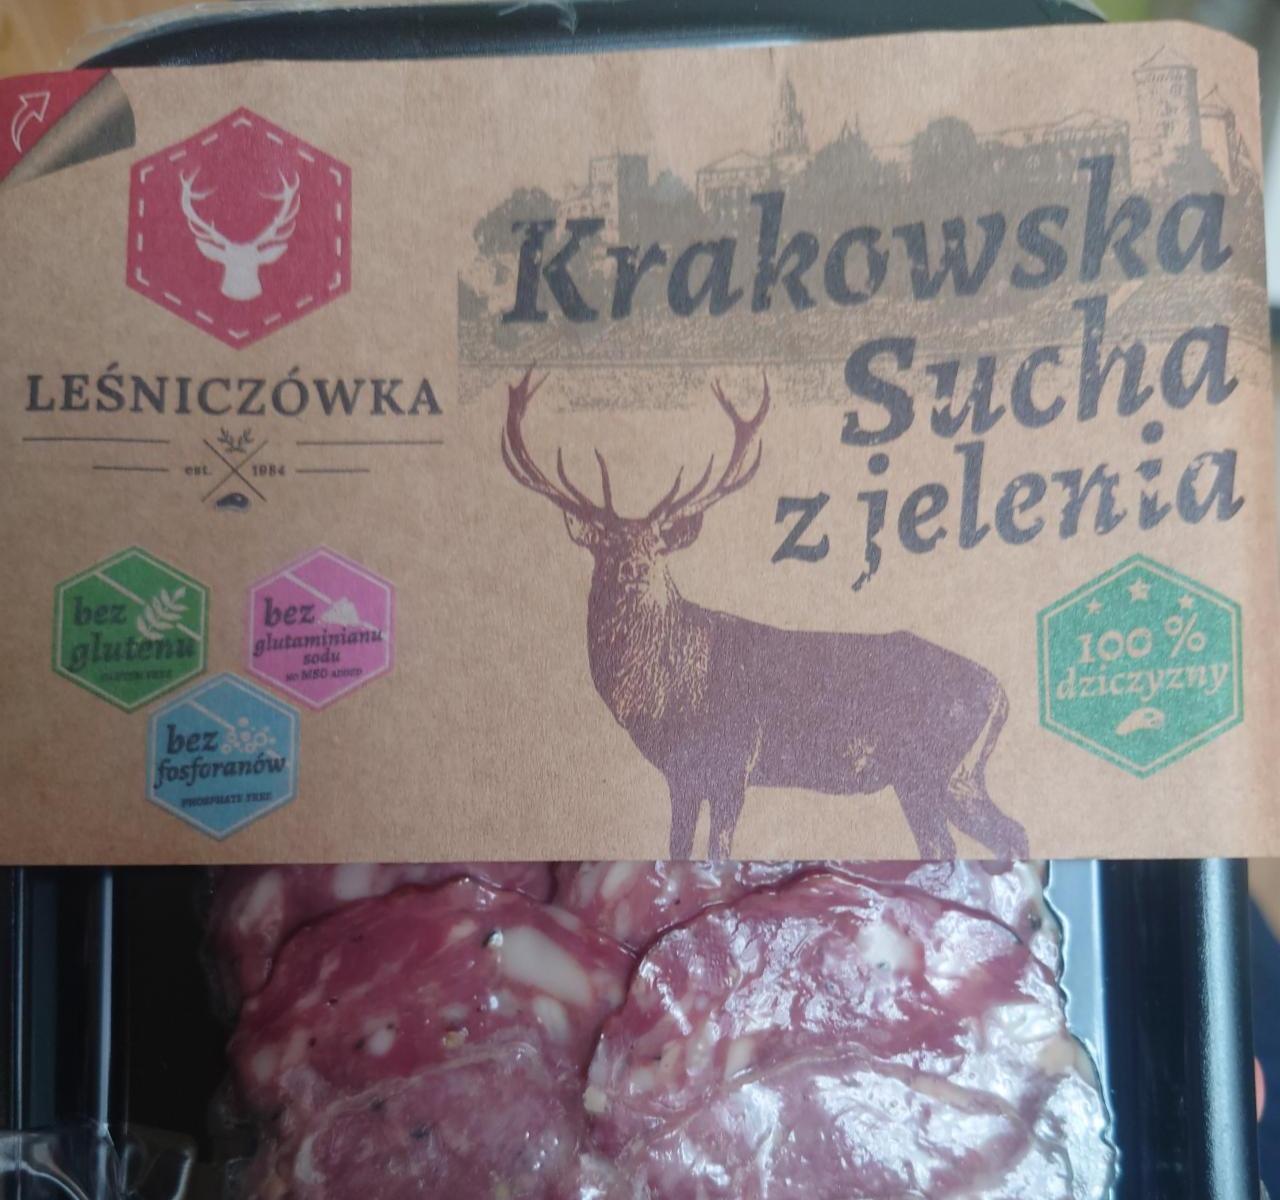 Fotografie - Krakowska sucha z jelenia Lesniczówka